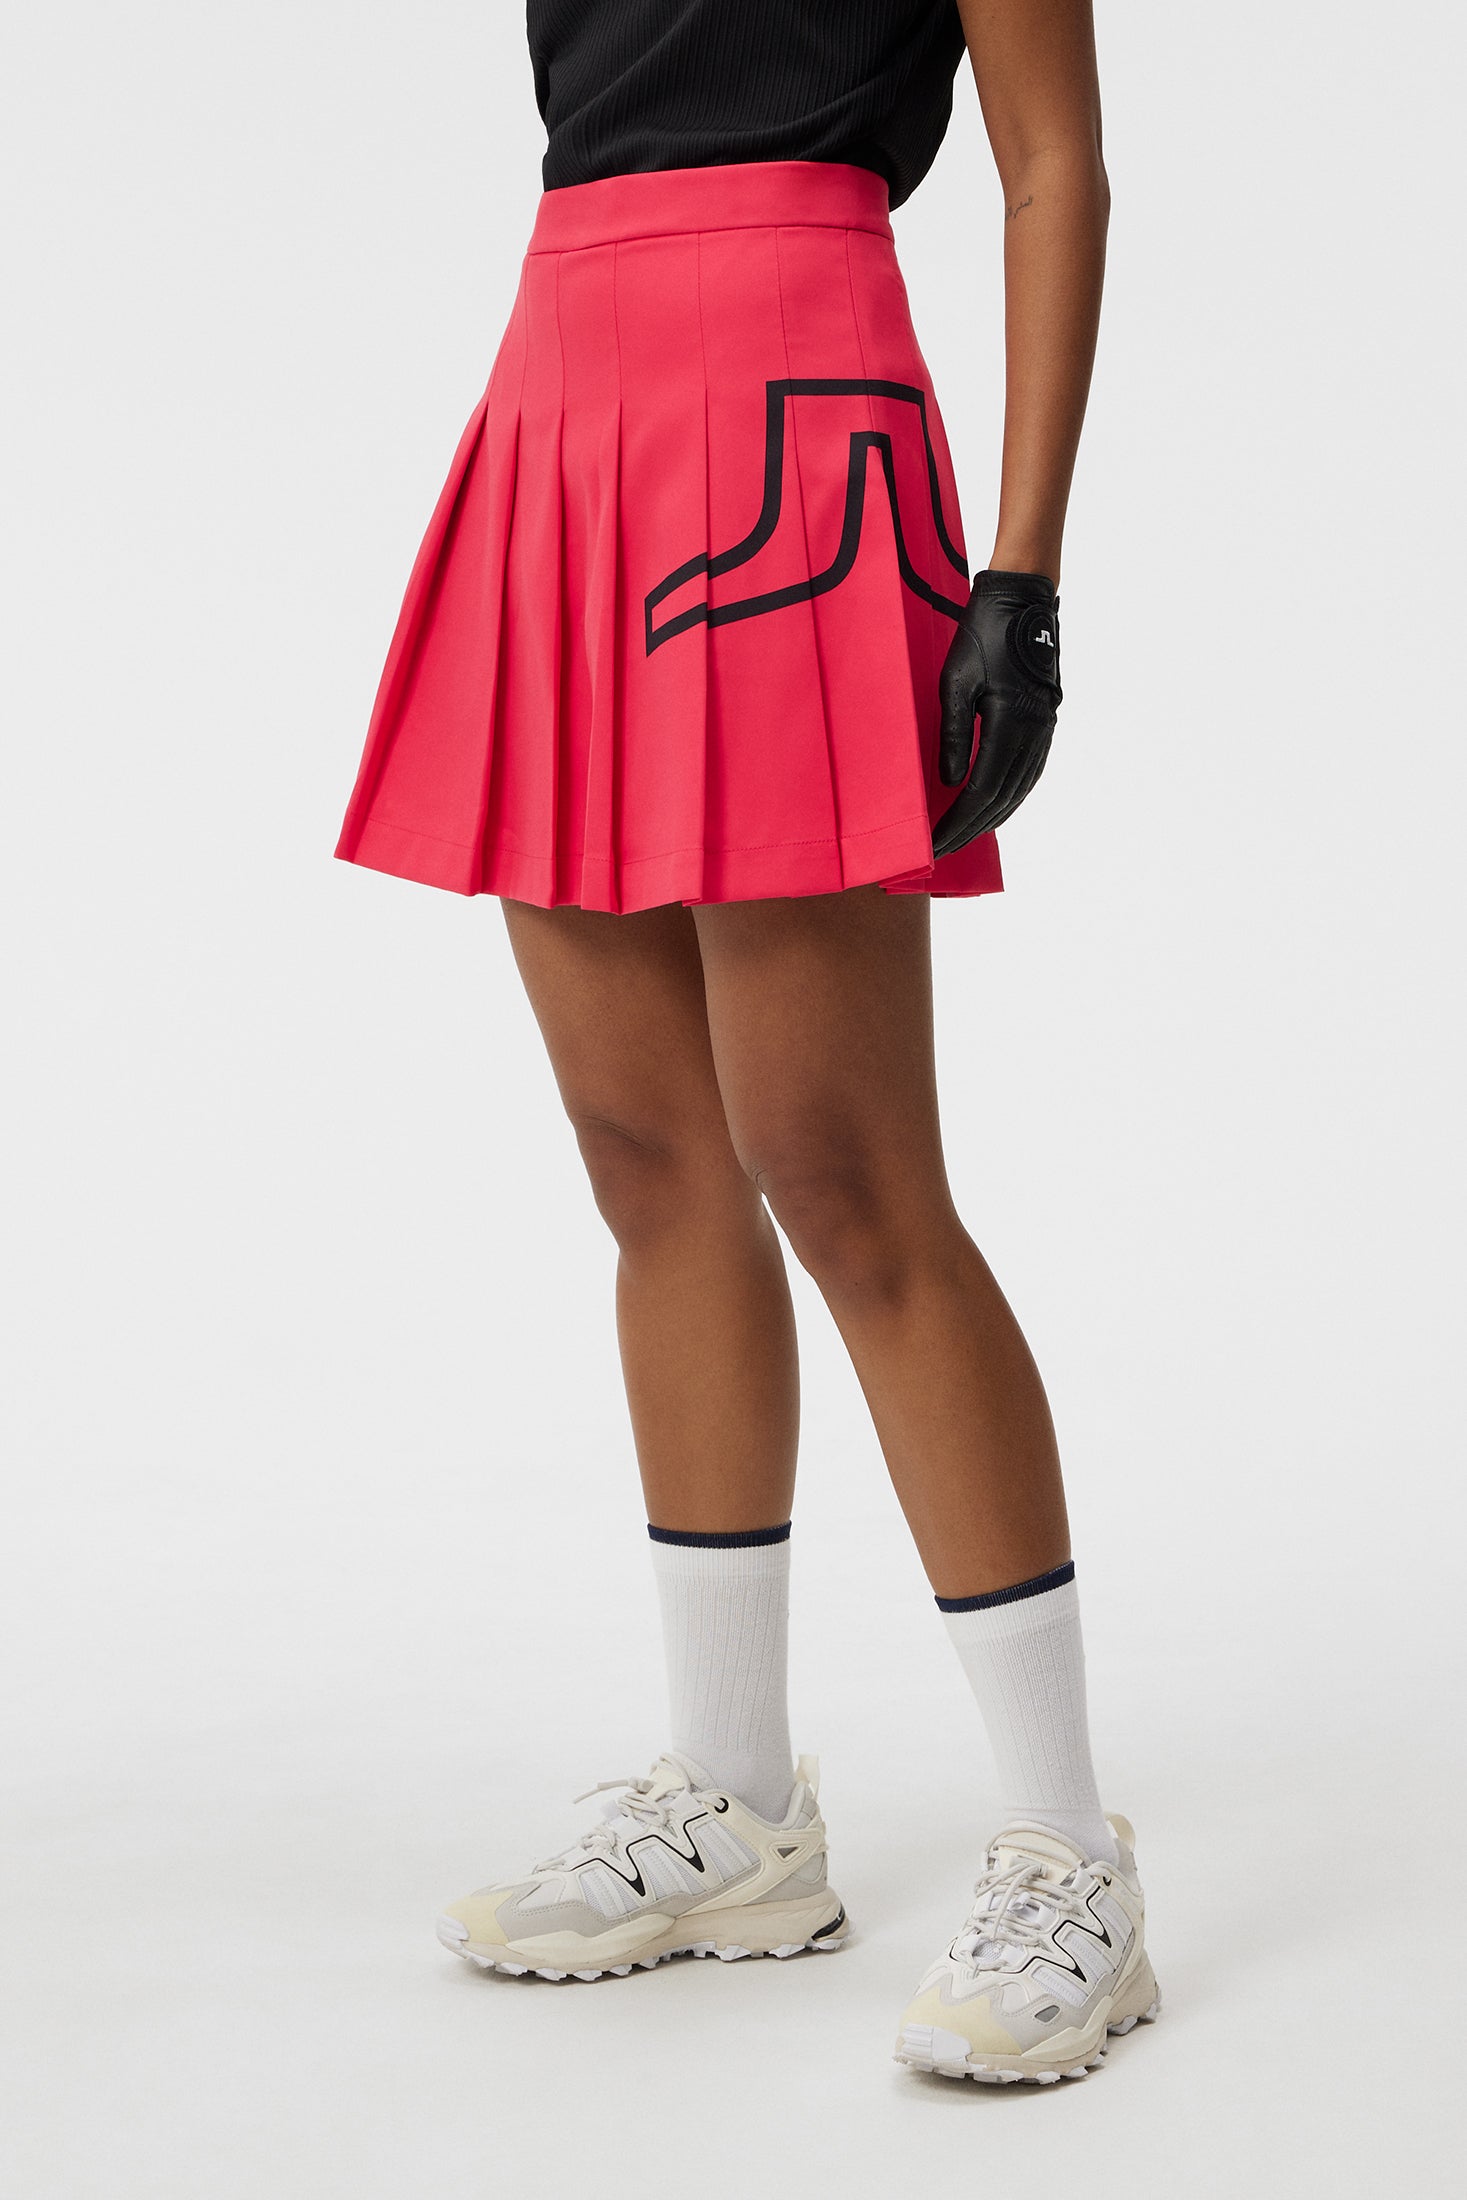 Naomi Skirt